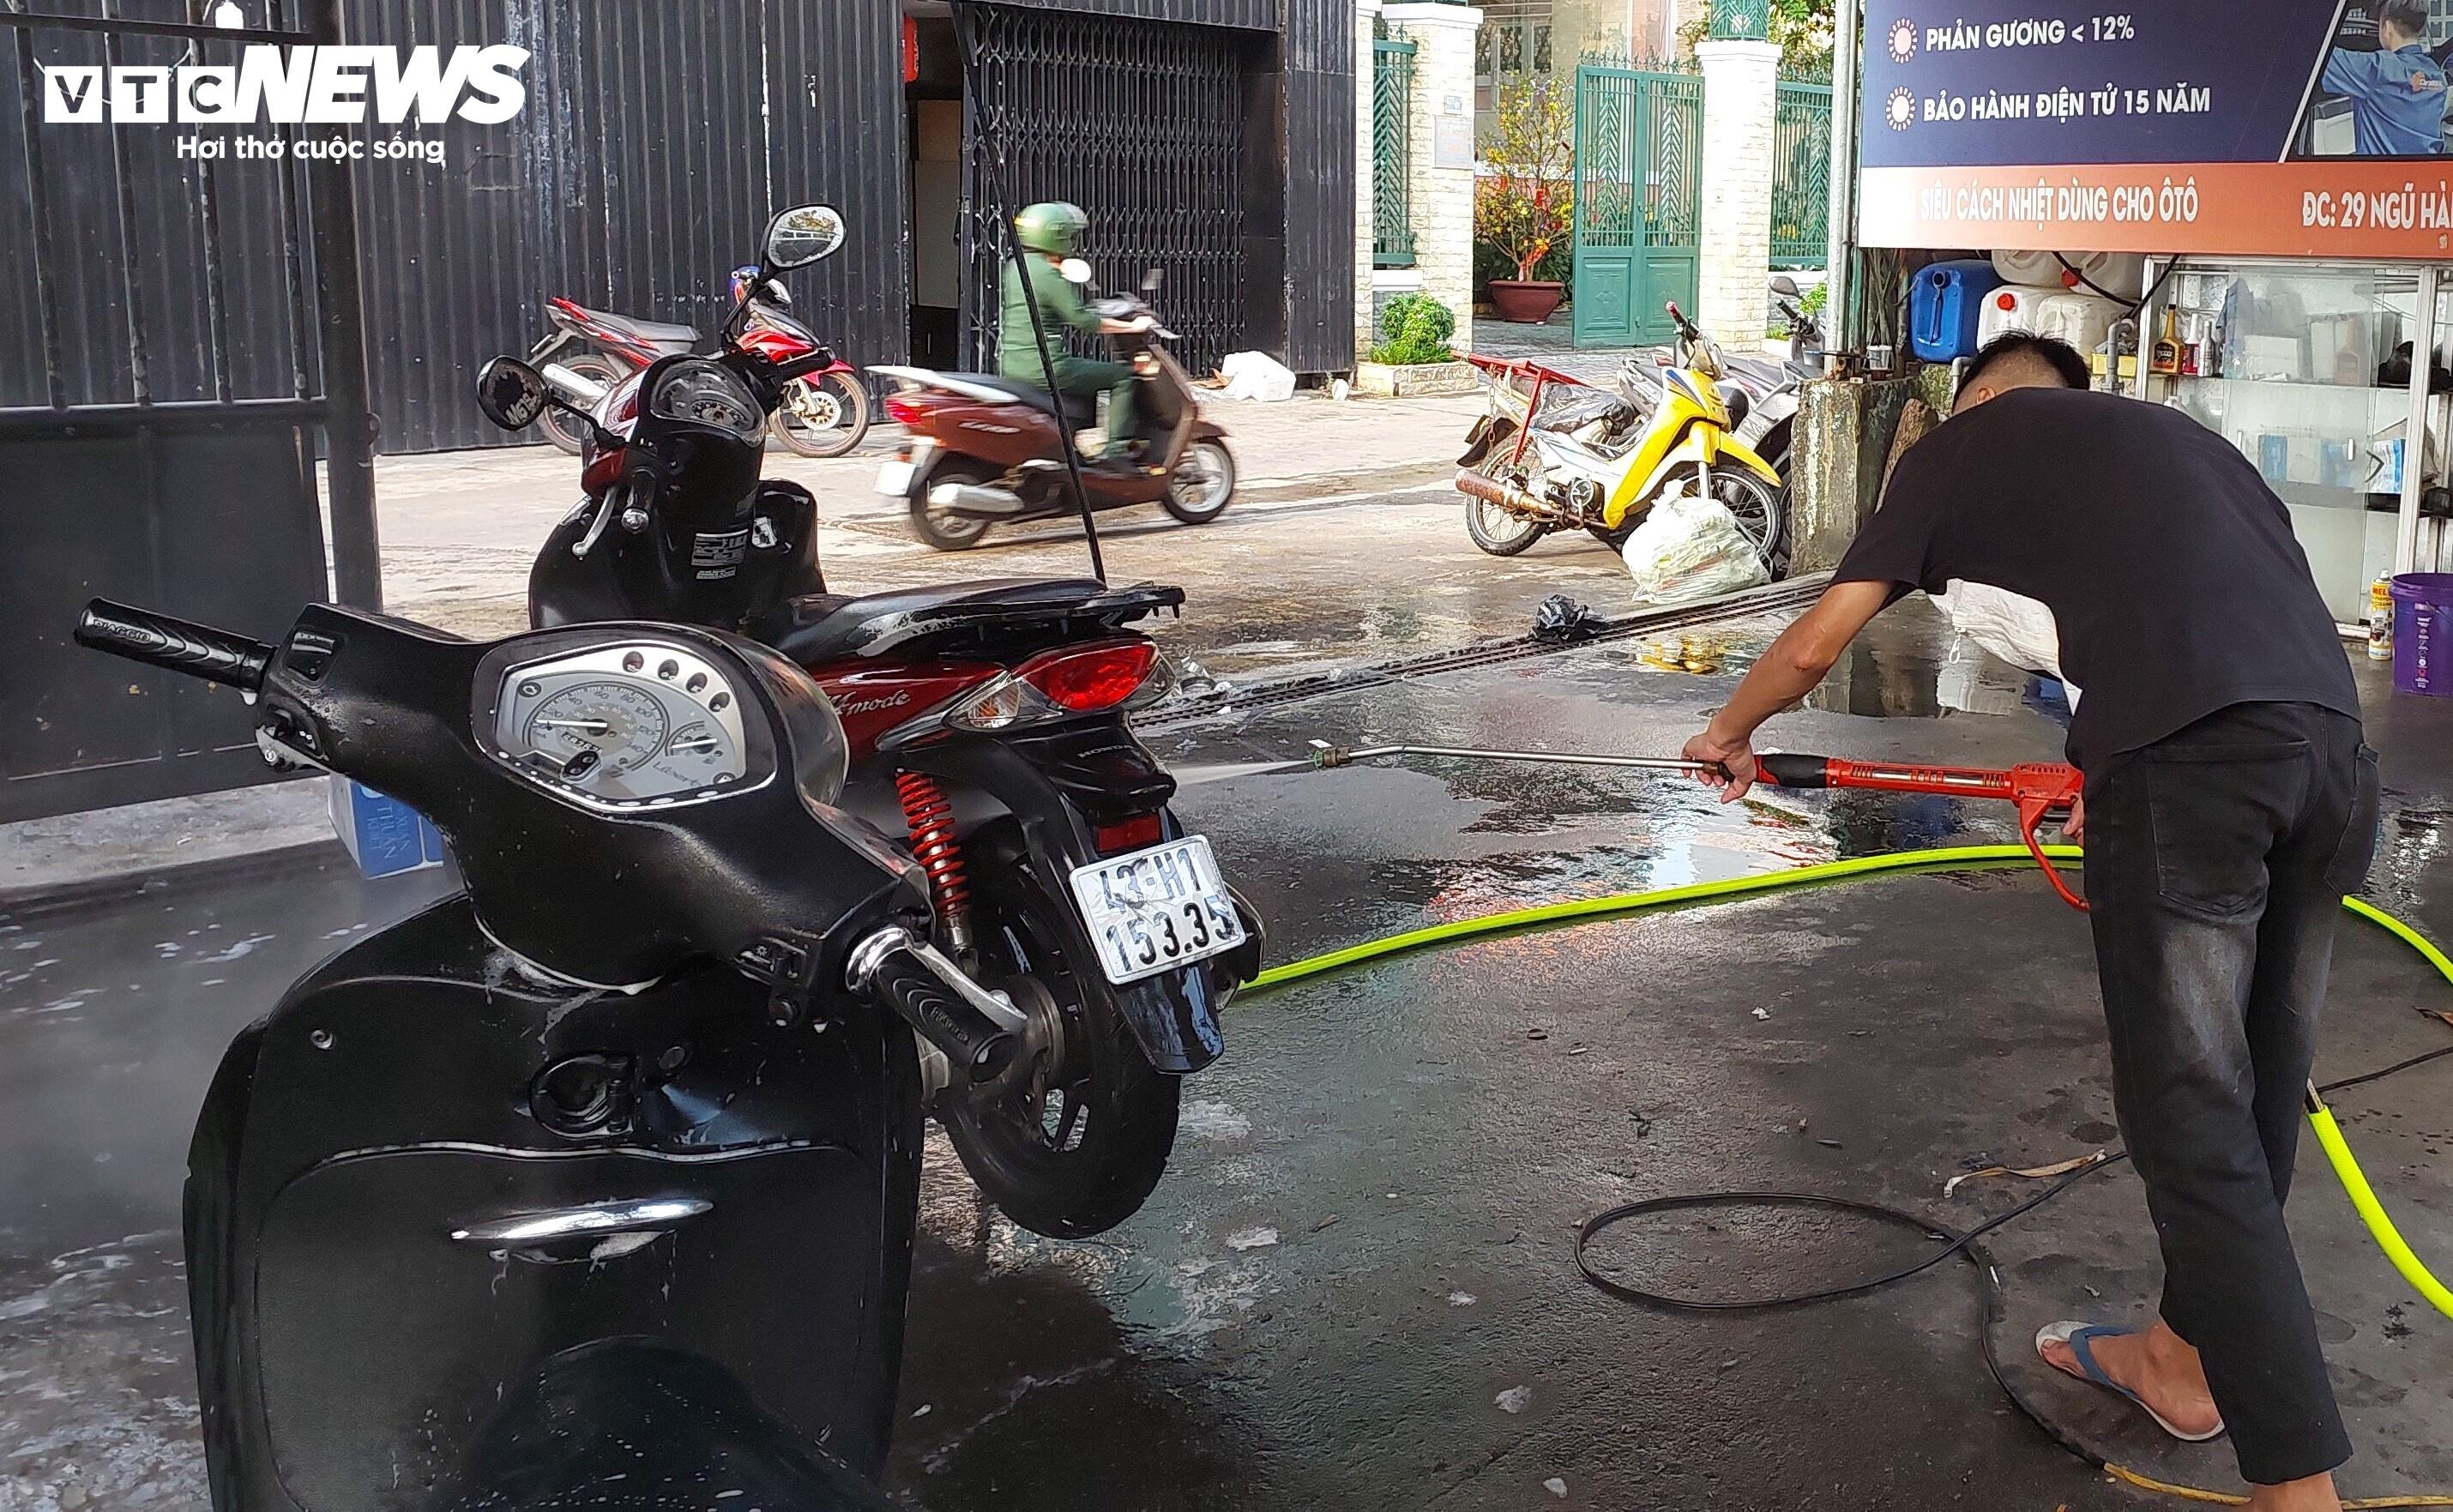 Rửa xe máy phải được thực hiện đúng quy định pháp luật. (Ảnh: Xuân Tiến)